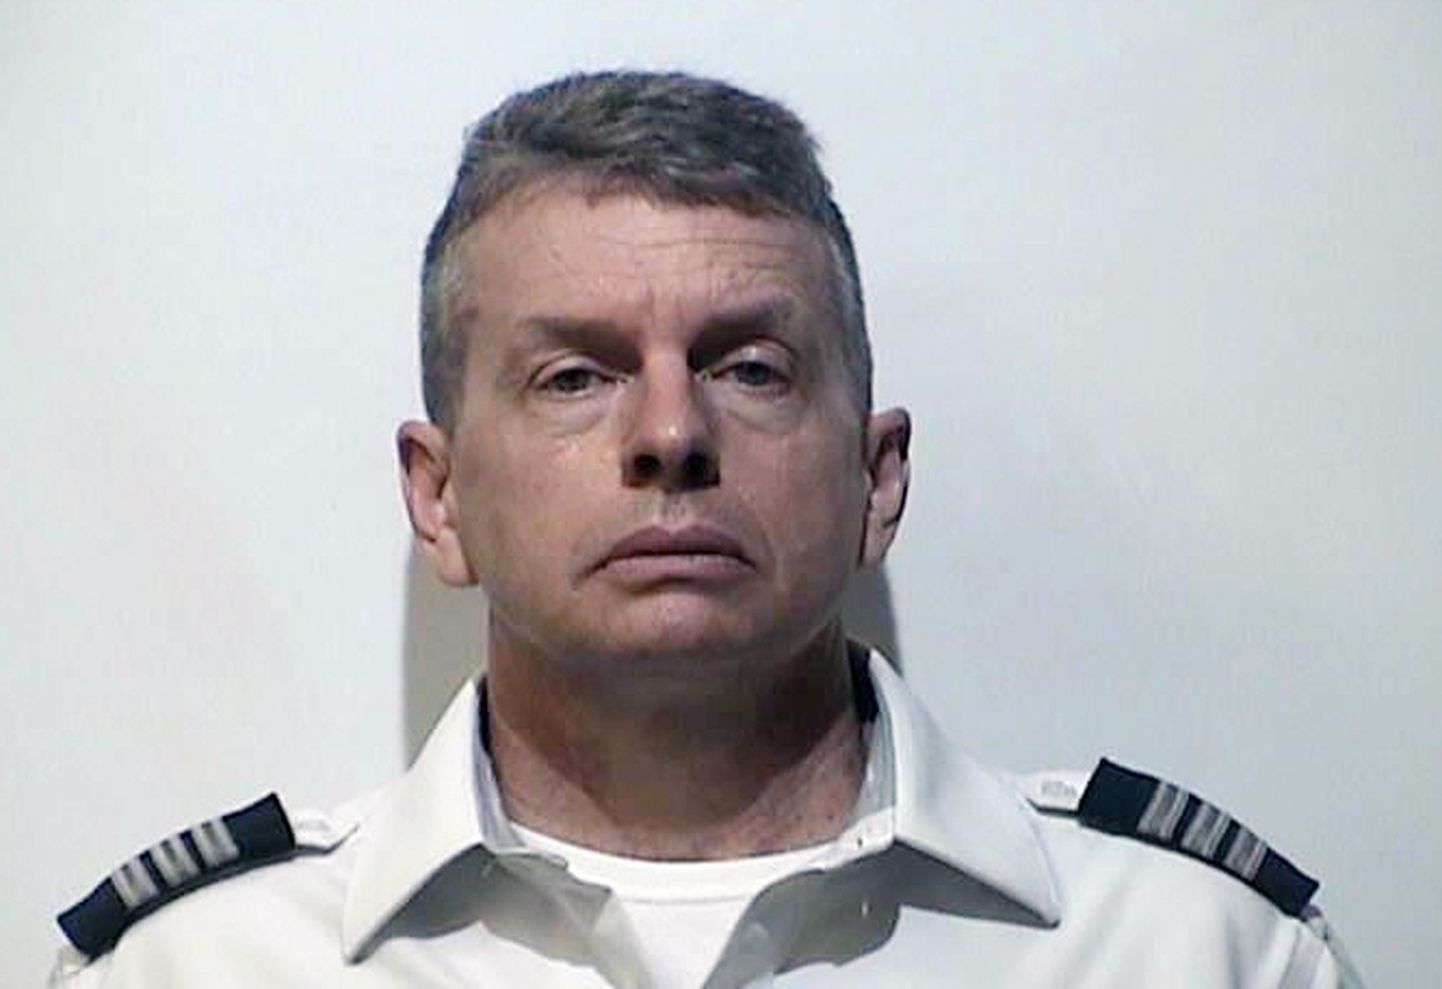 American Airlinesi piloot Christian Richard Martin, keda kahtlustatakse kolme inimese mõrvas